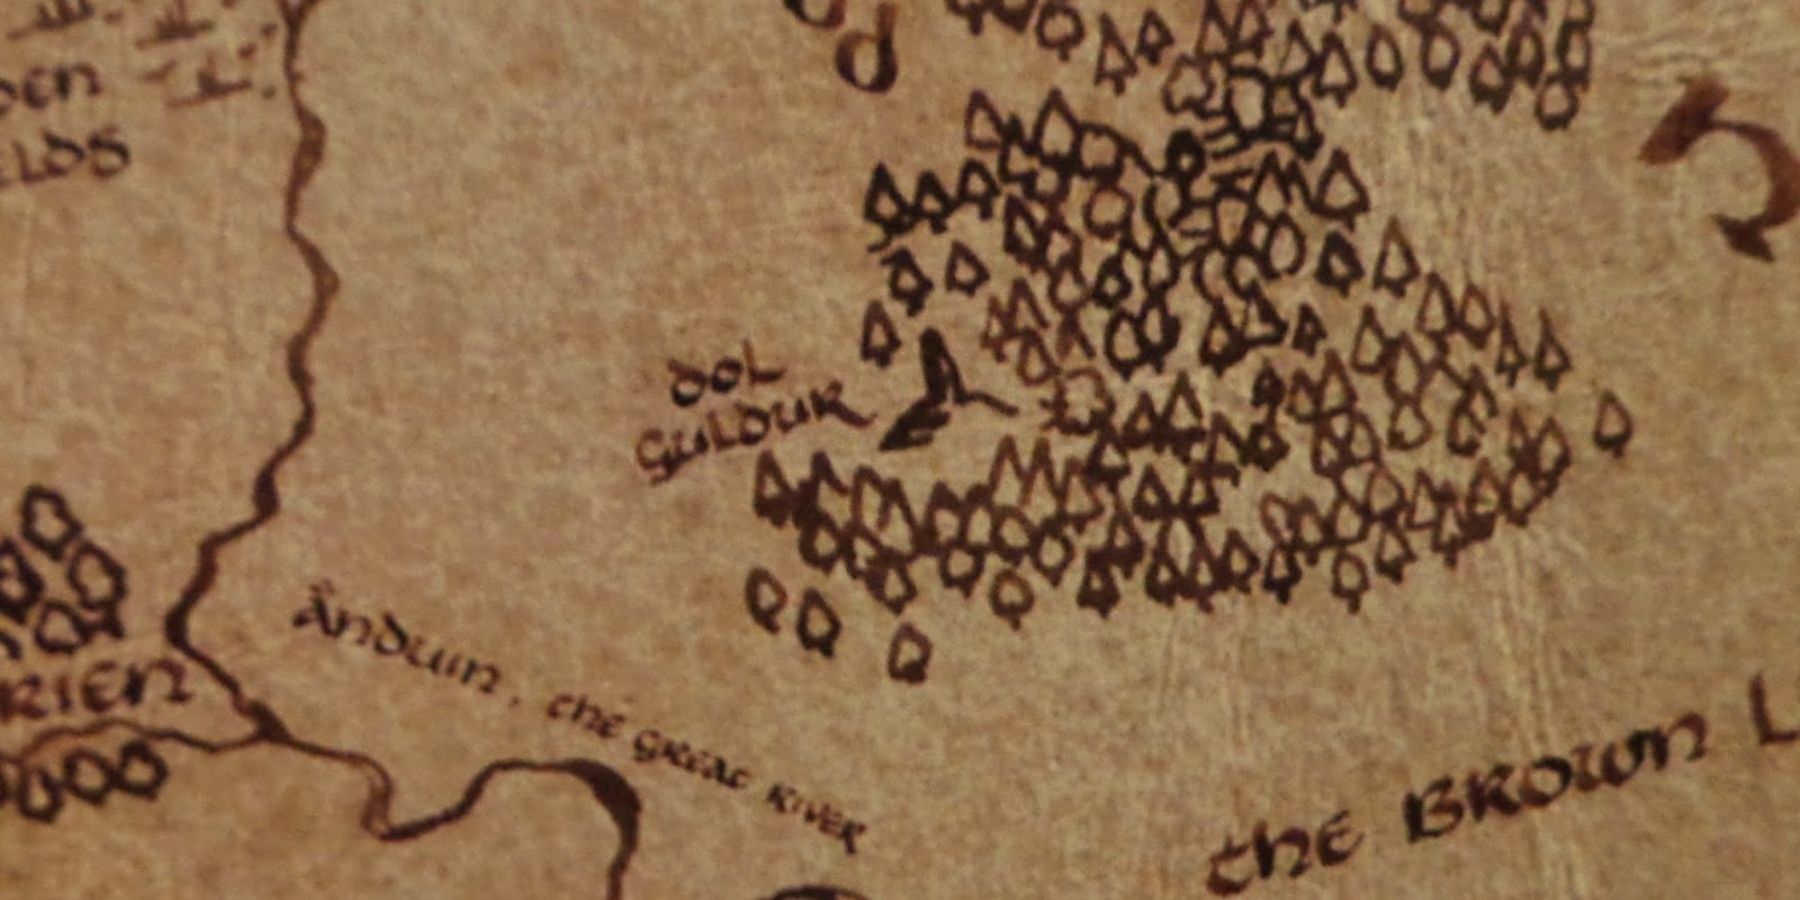 Dol Guldur on the map